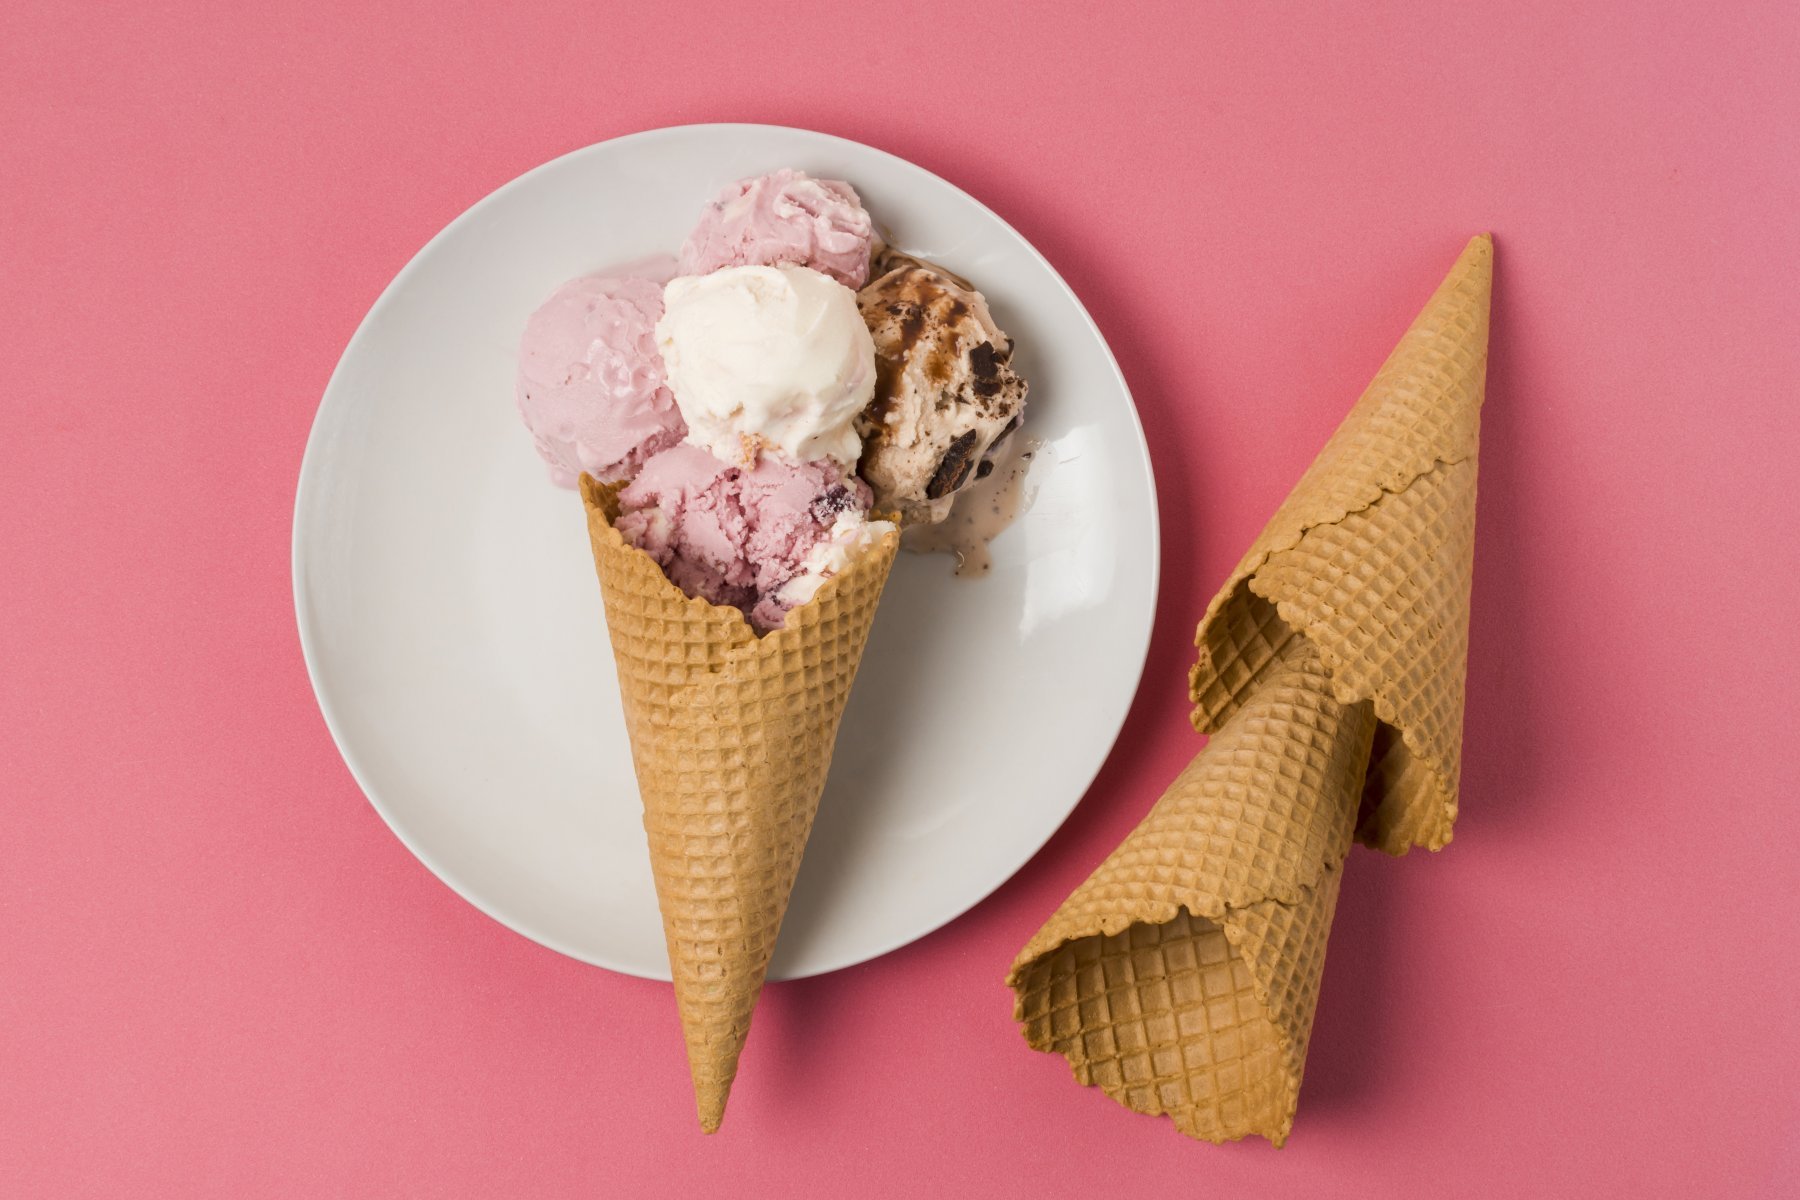 Диетолог посоветовала в день съедать не более одной порции натурального мороженого